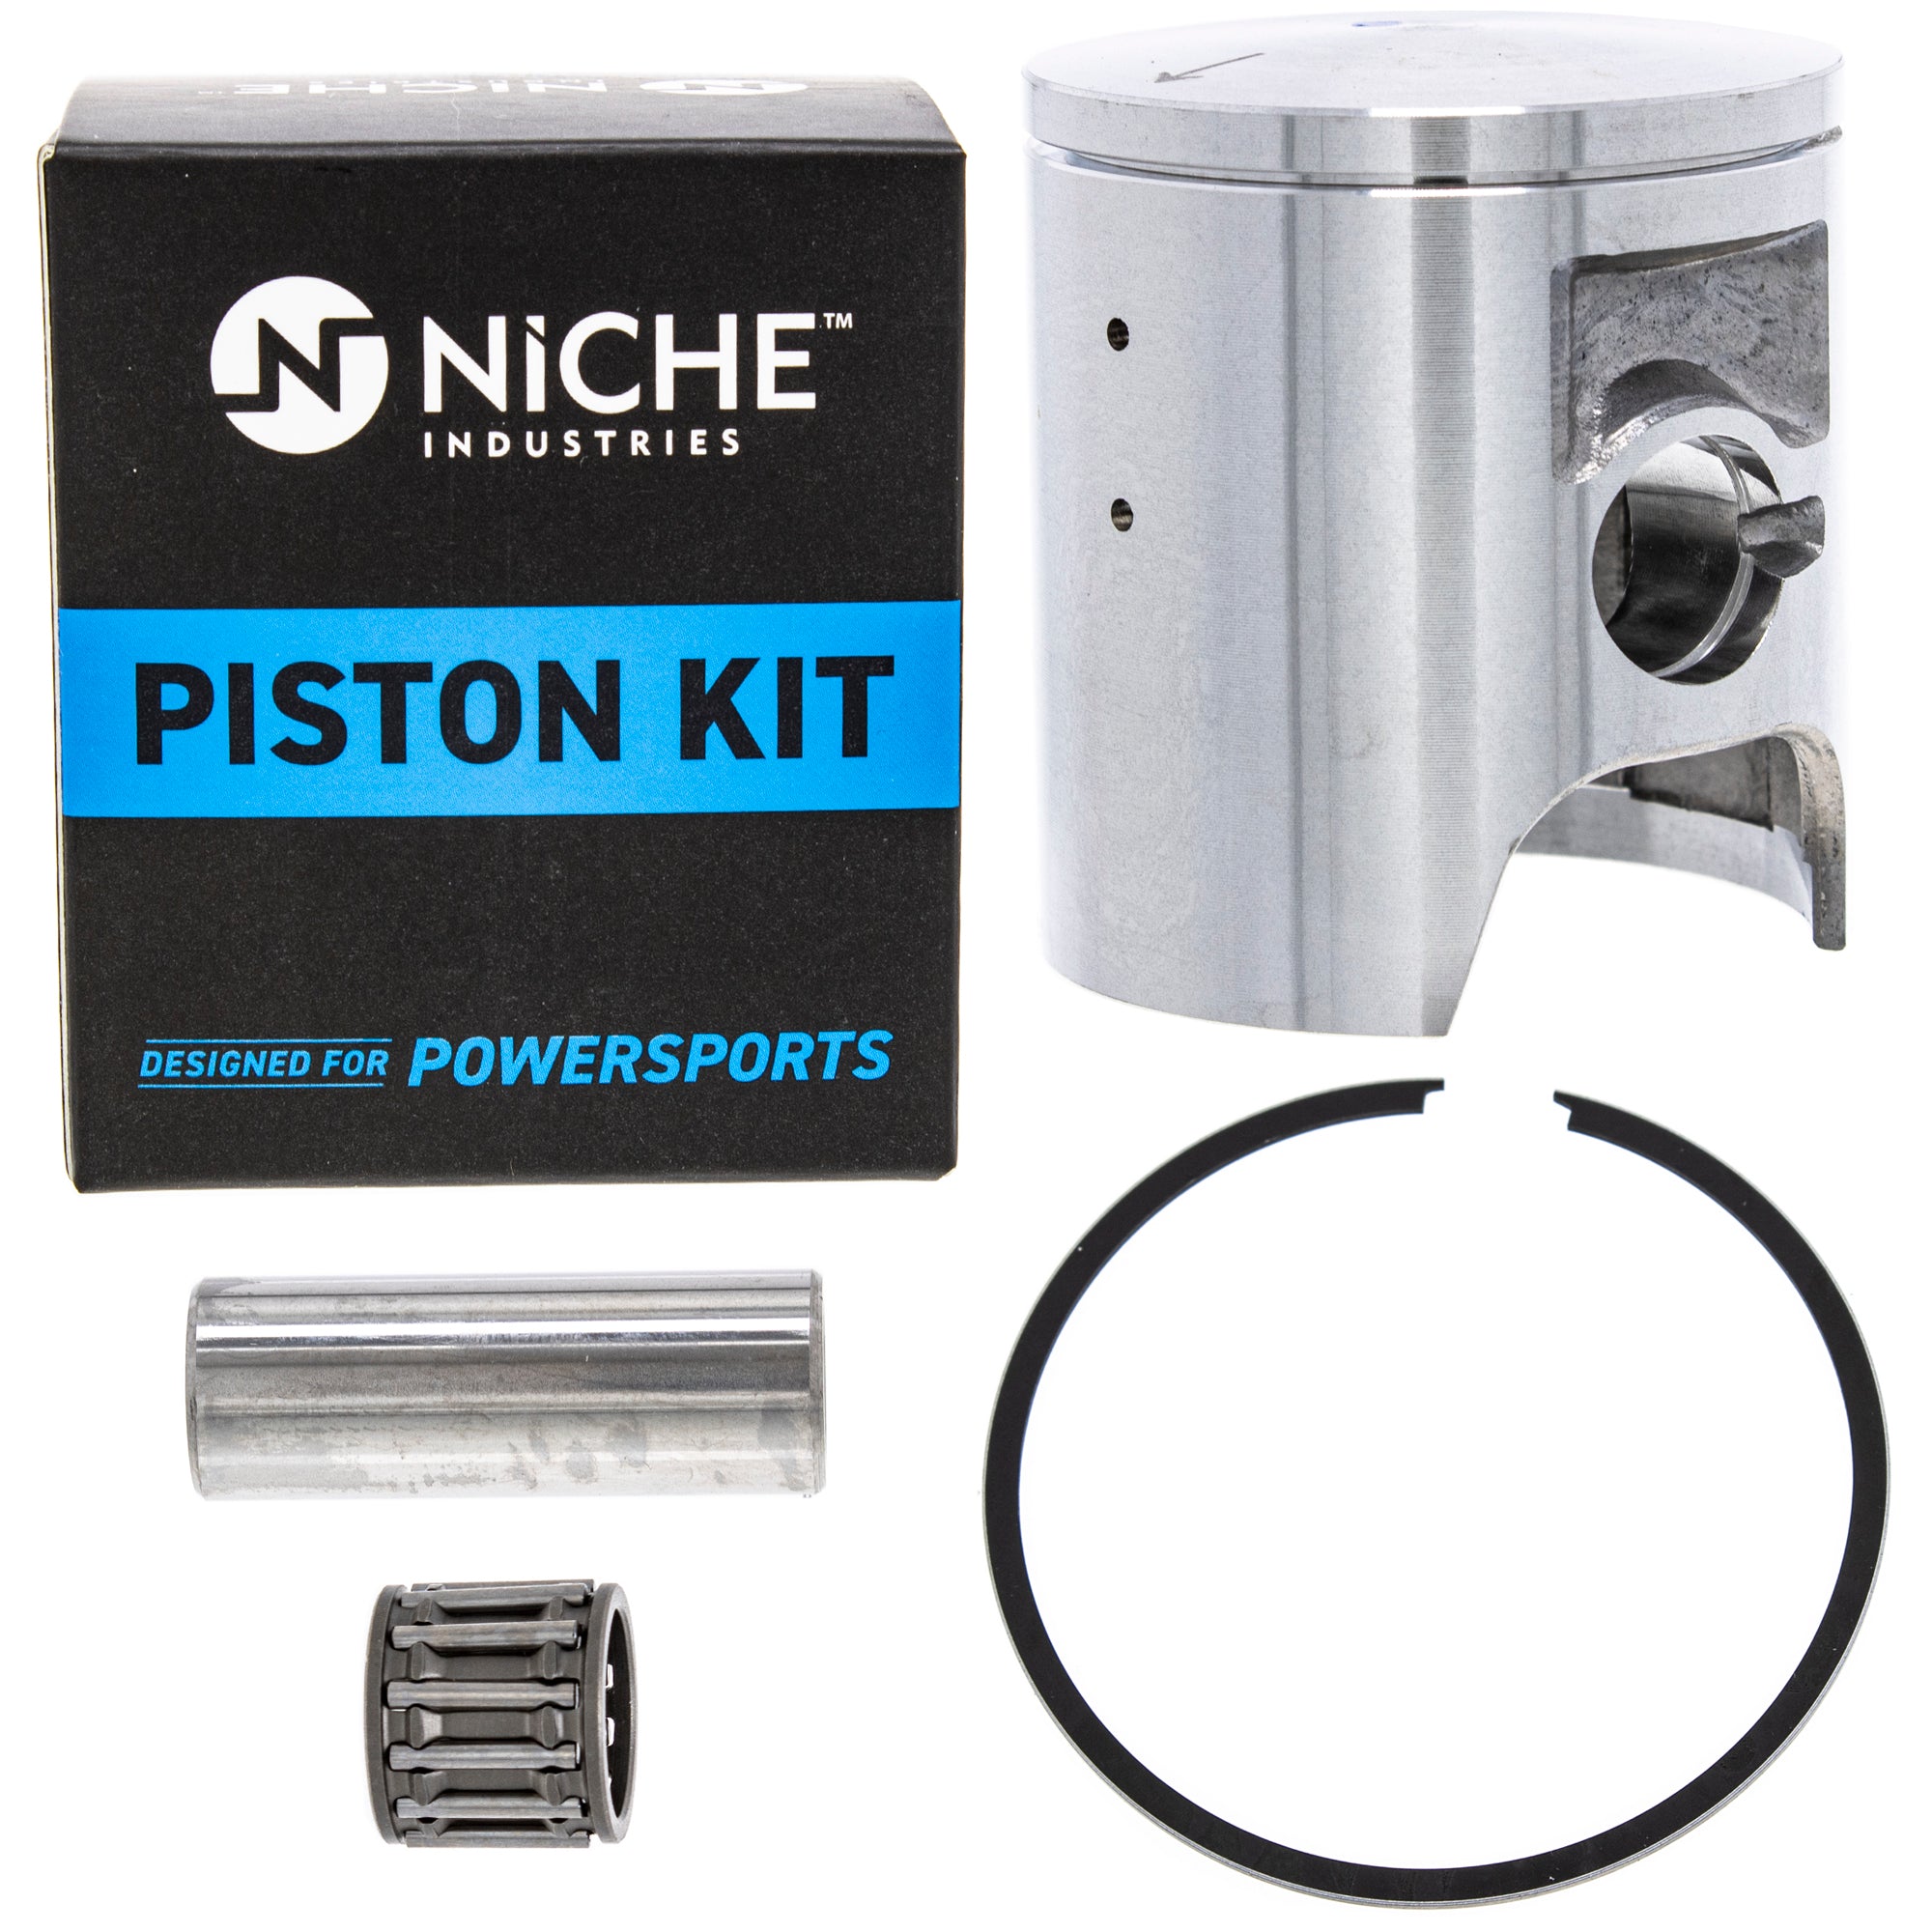 NICHE MK1000975 Cylinder Kit